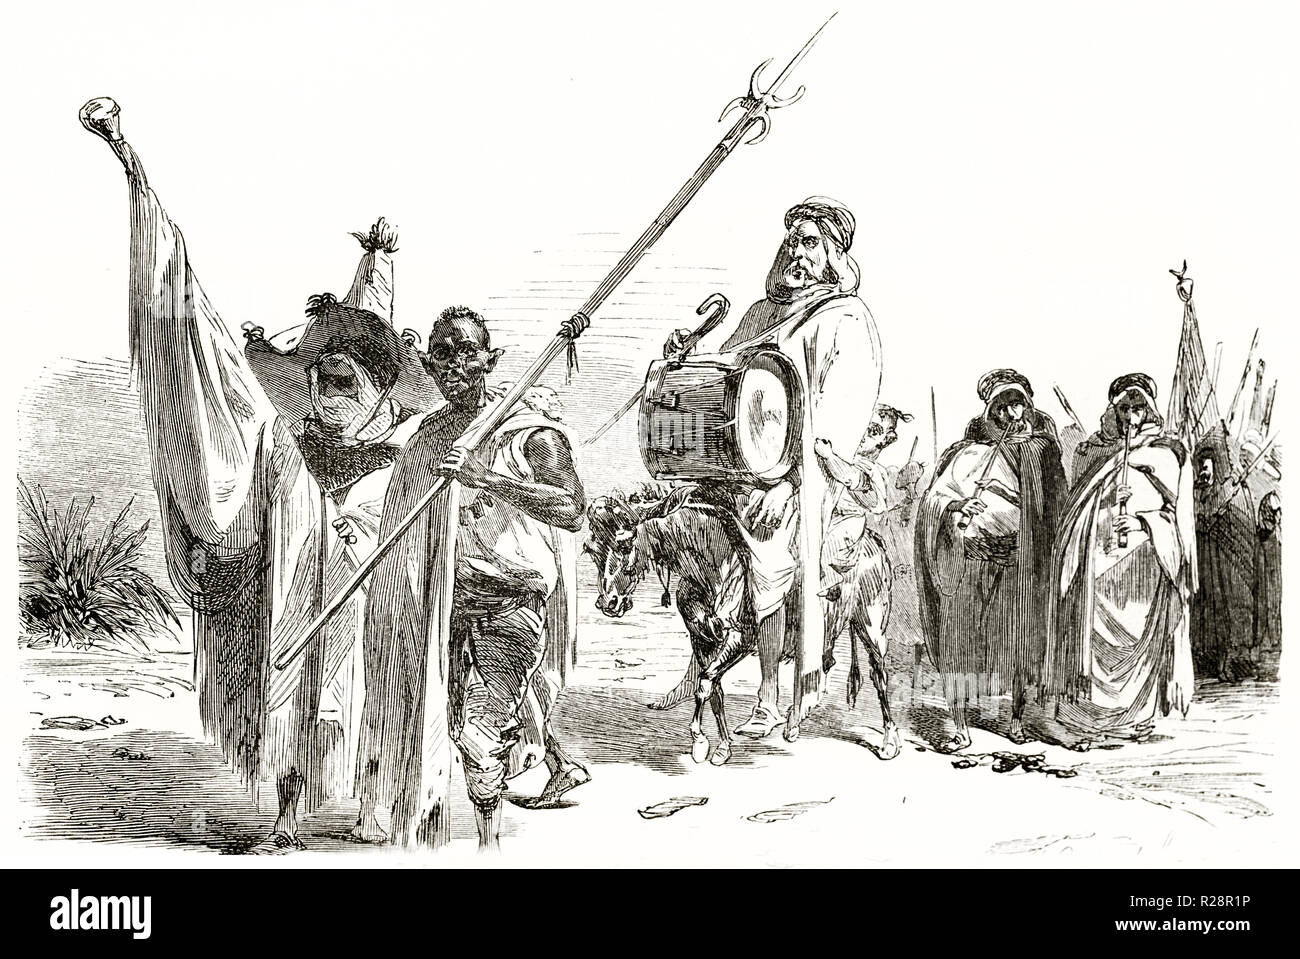 Ilustración antigua representando la mendicidad morabitos, Argelia. Por Couverchel, publ. en le Tour du Monde, París, 1863 Foto de stock